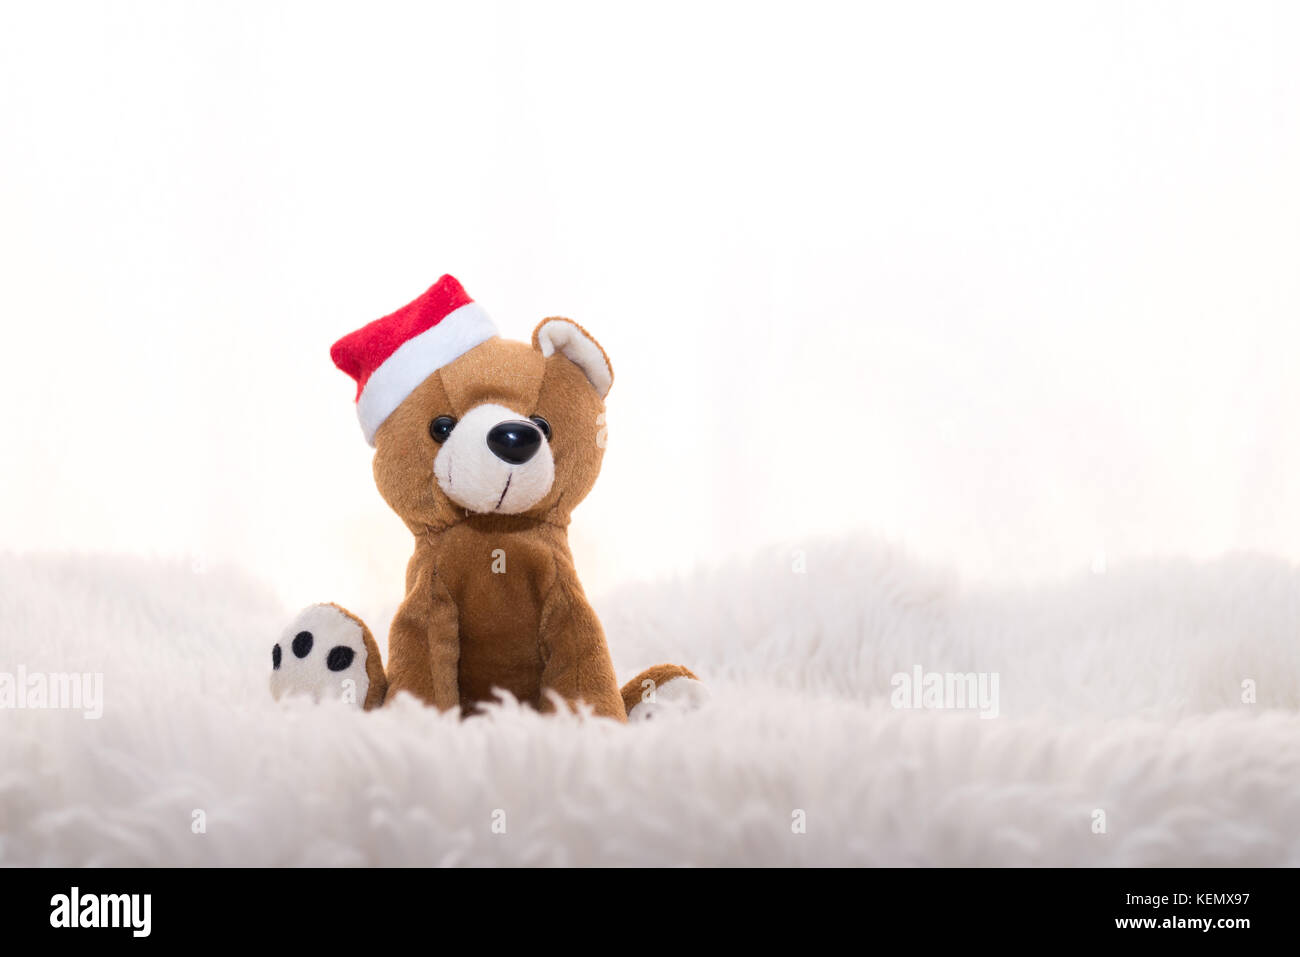 teddybear, teddy bear, fur, Stock Photo